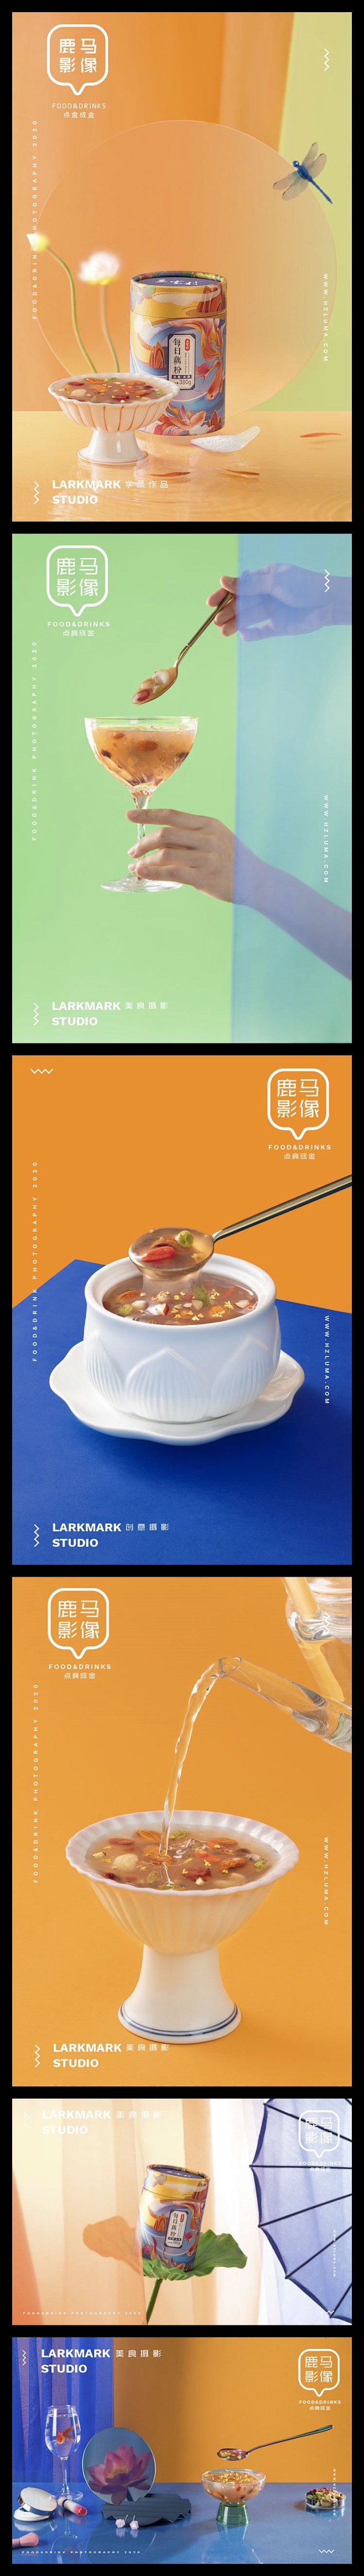 藕粉食品美食摄影海报 (4)